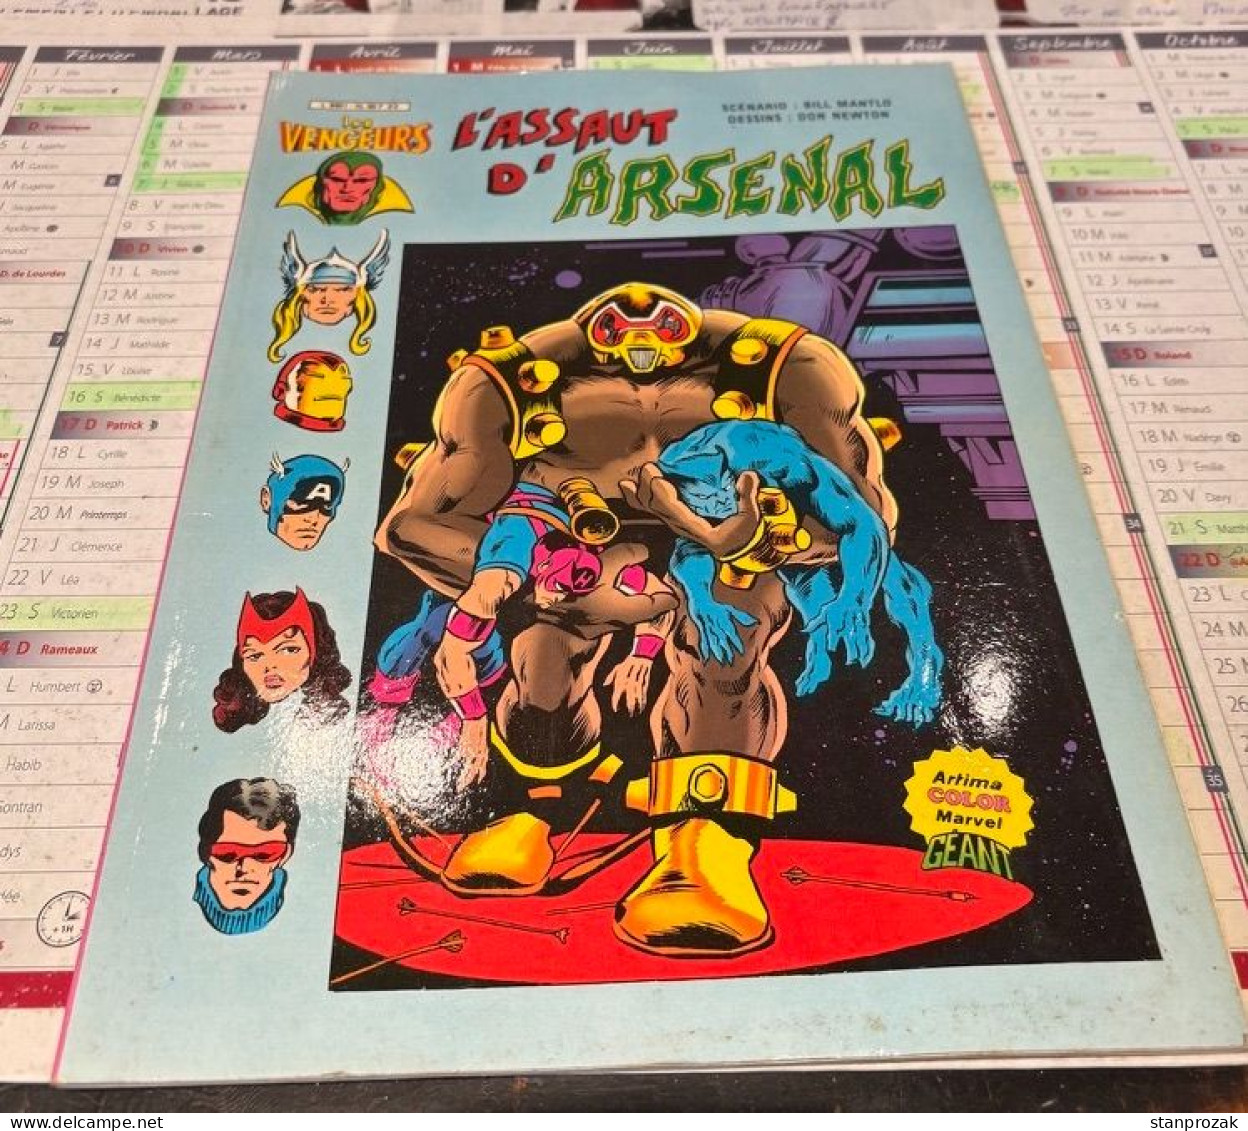 Les Vengeurs L'assaut D'Arsenal - Original Edition - French